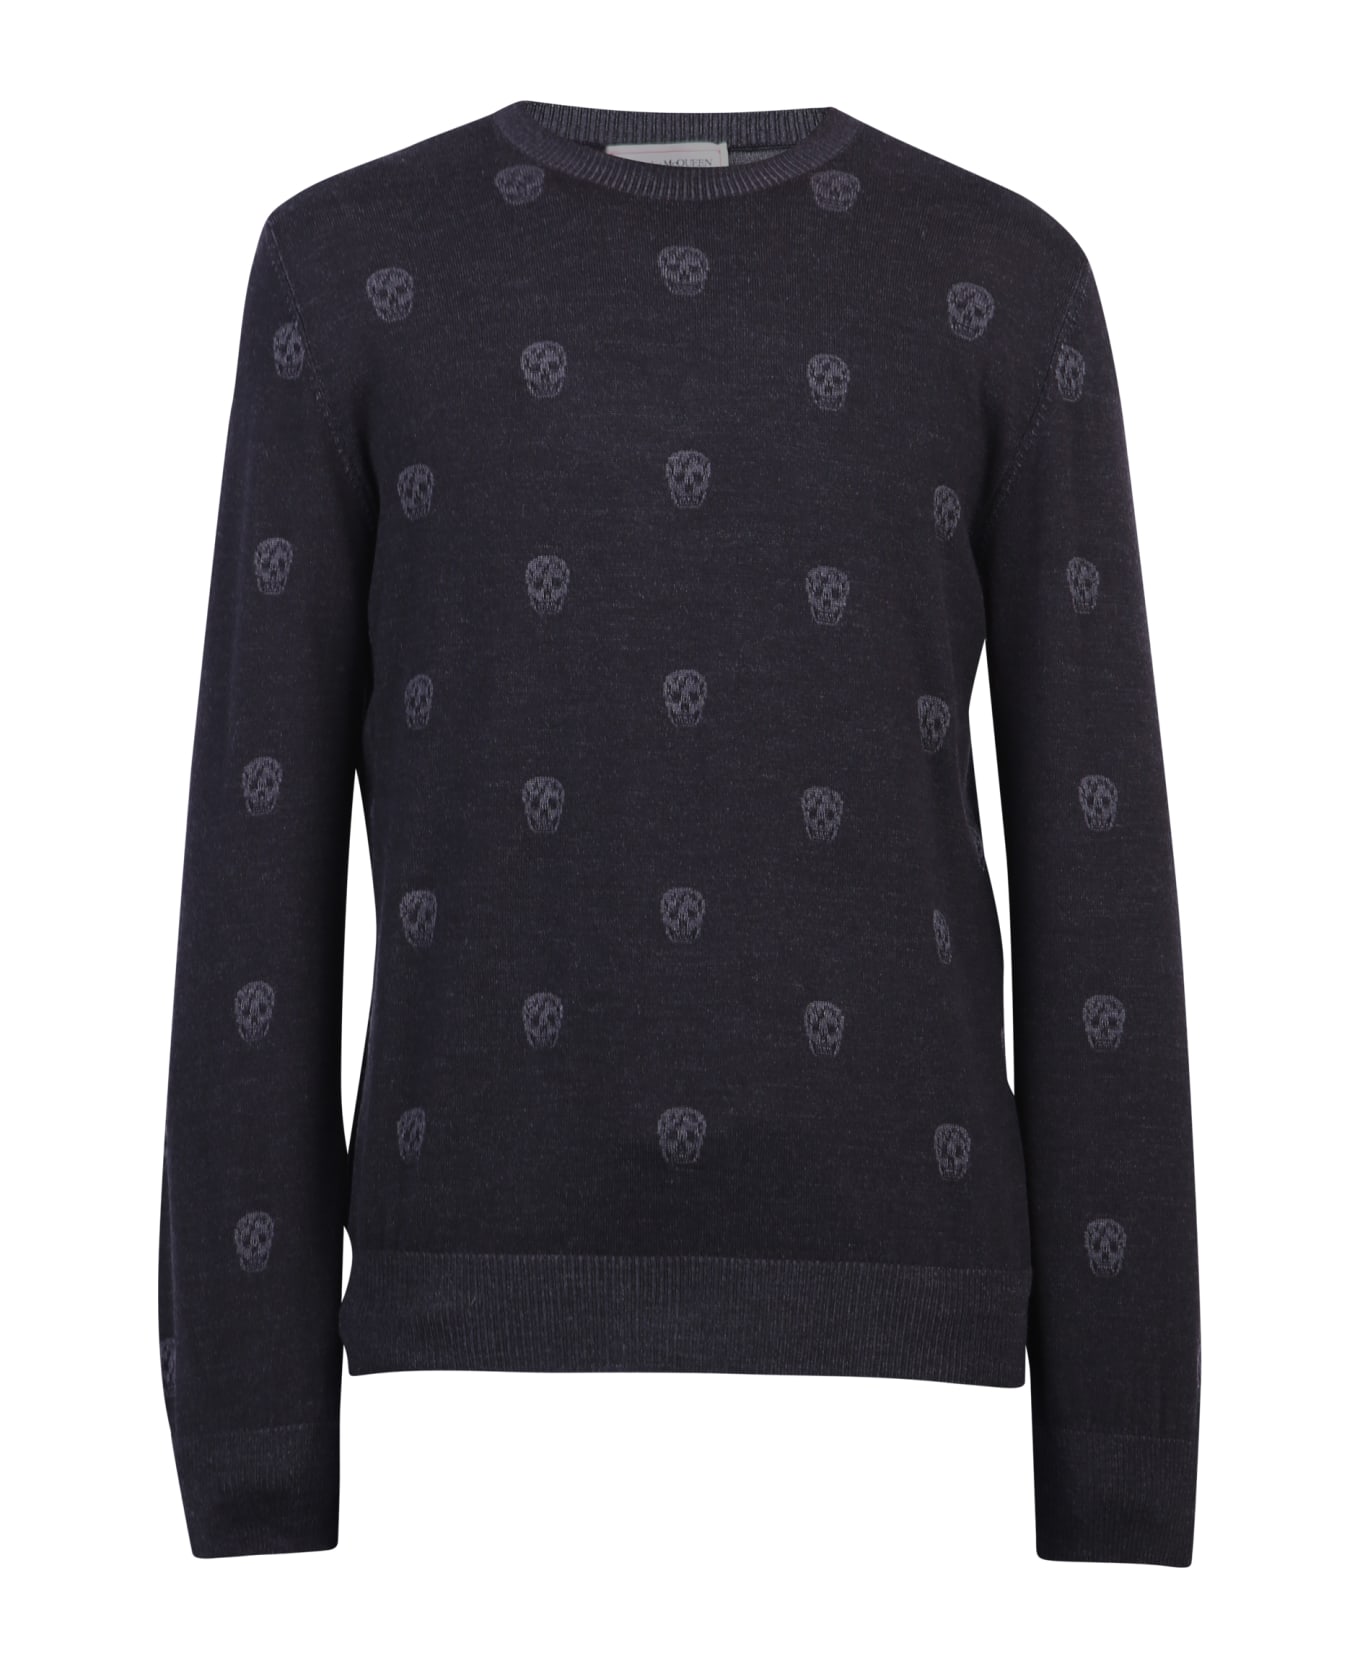 Alexander McQueen Intarsia Sweater - Black